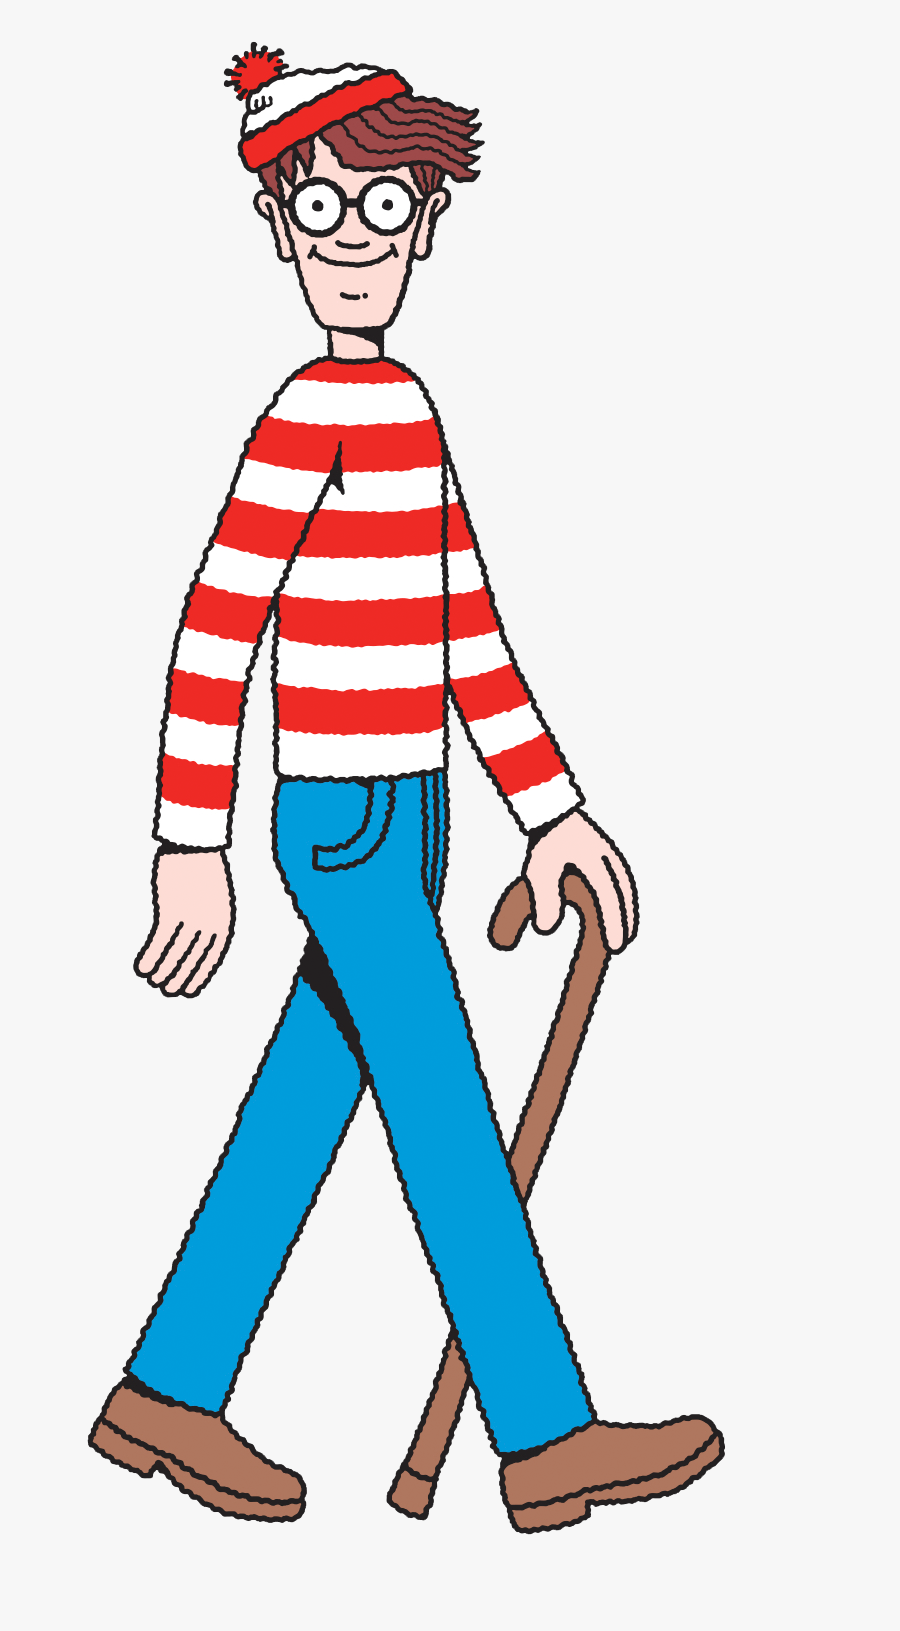 Where's Waldo Transparent Background, Transparent Clipart